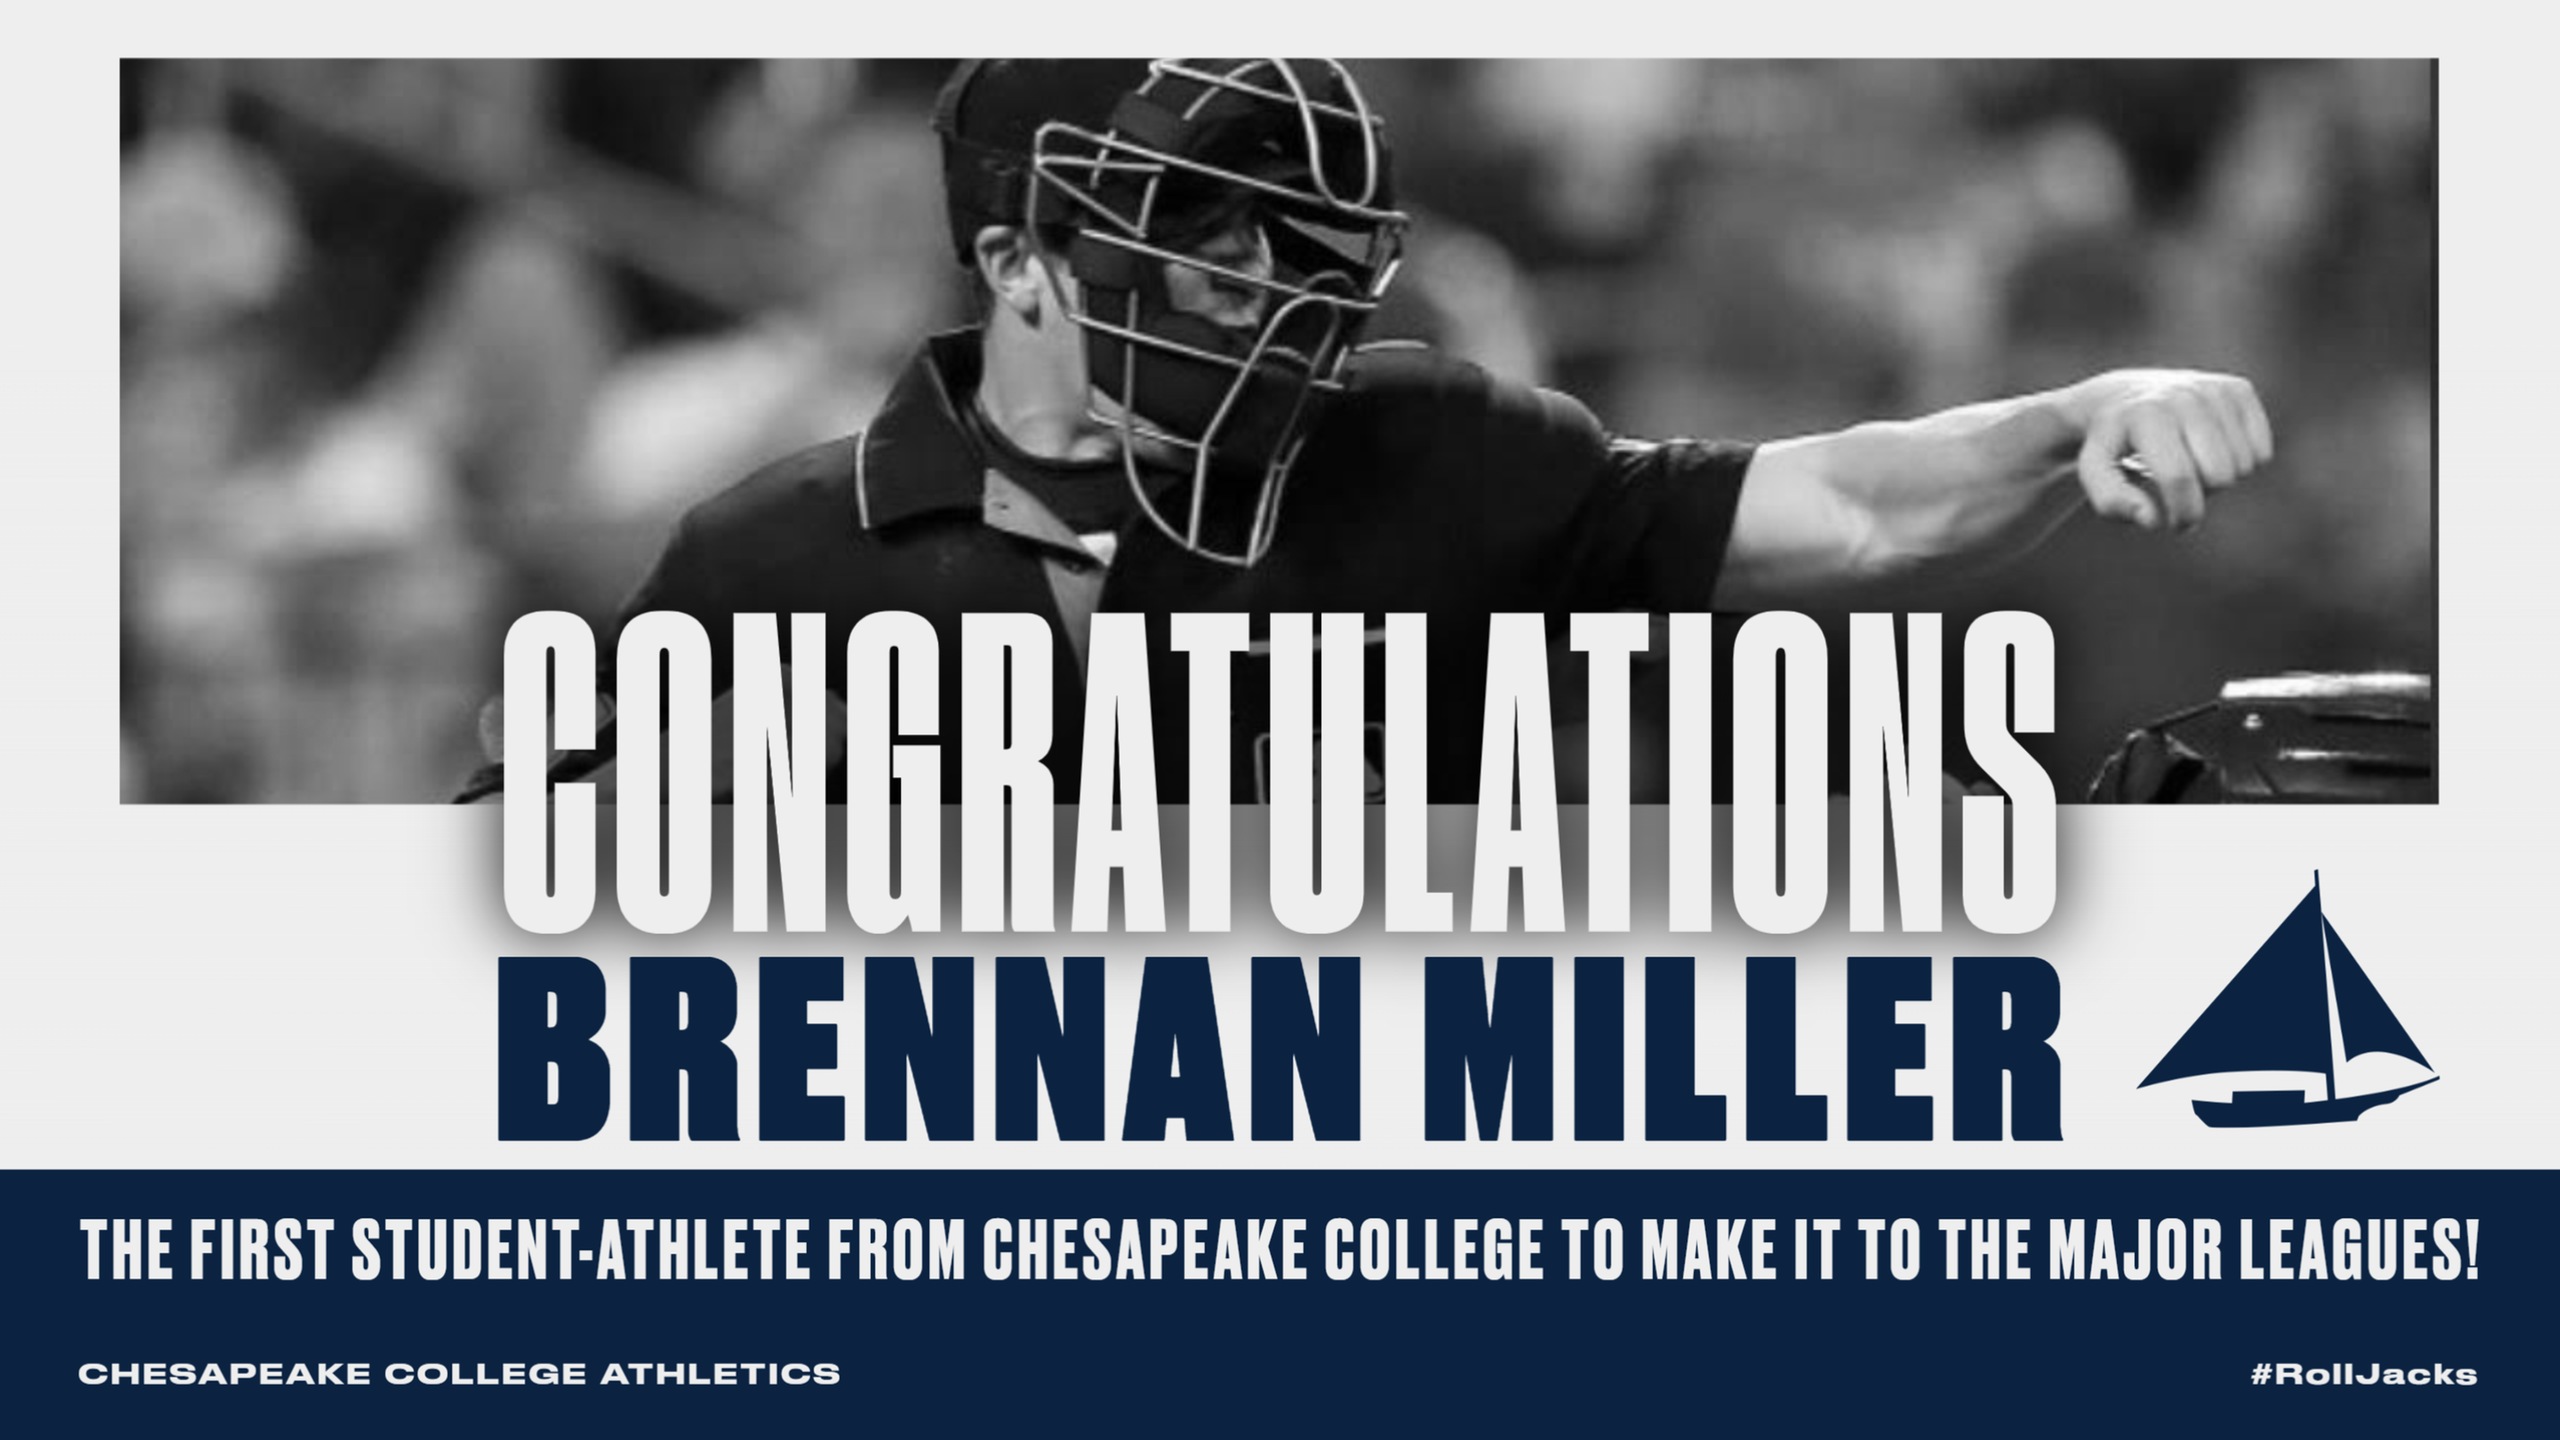 Congratulations Brennan Miller!!!